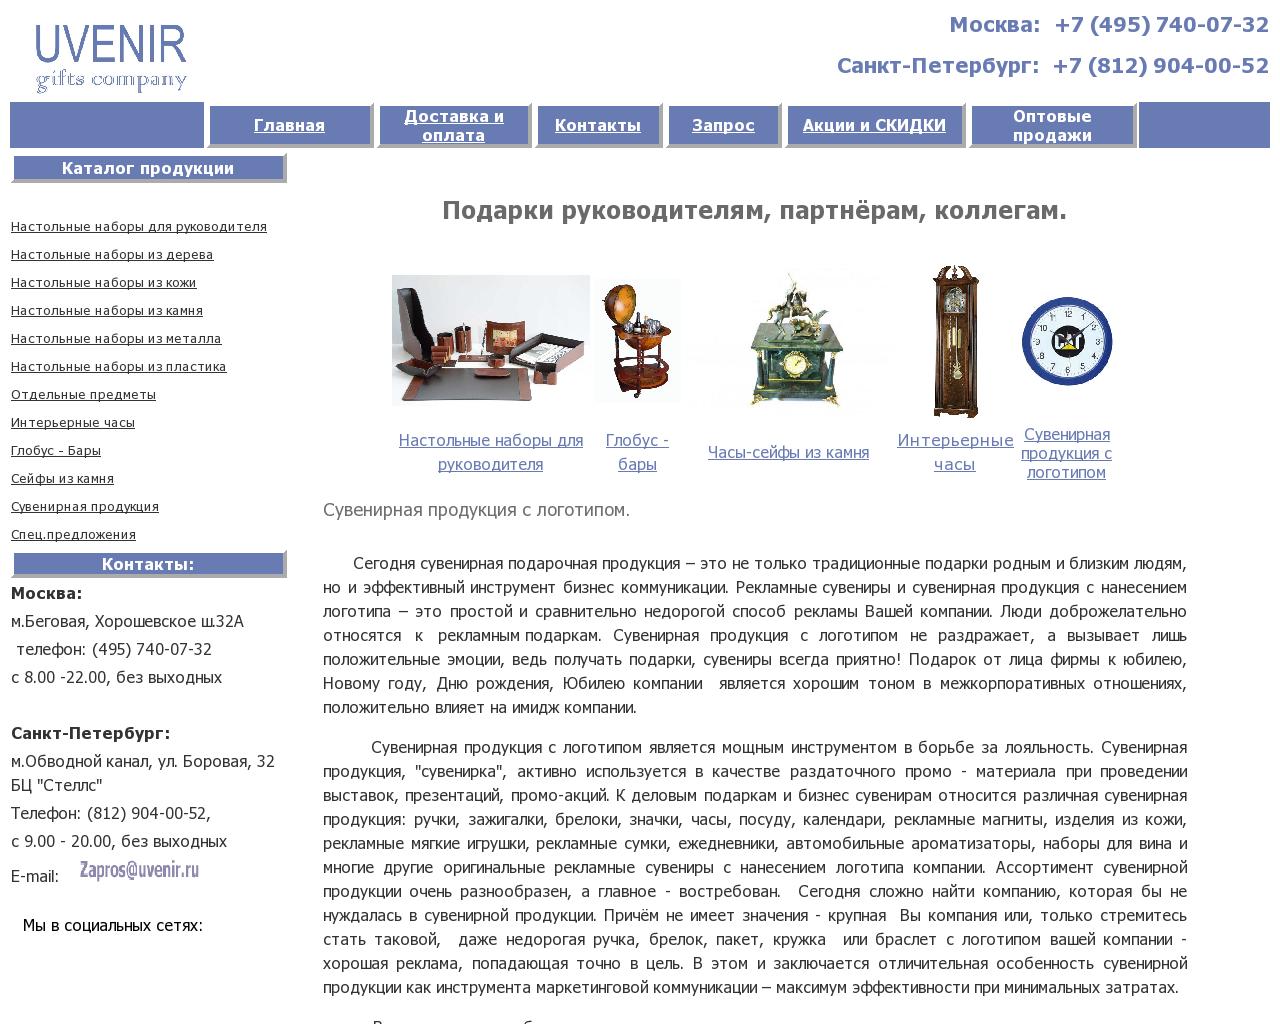 Изображение сайта uvenir.ru в разрешении 1280x1024